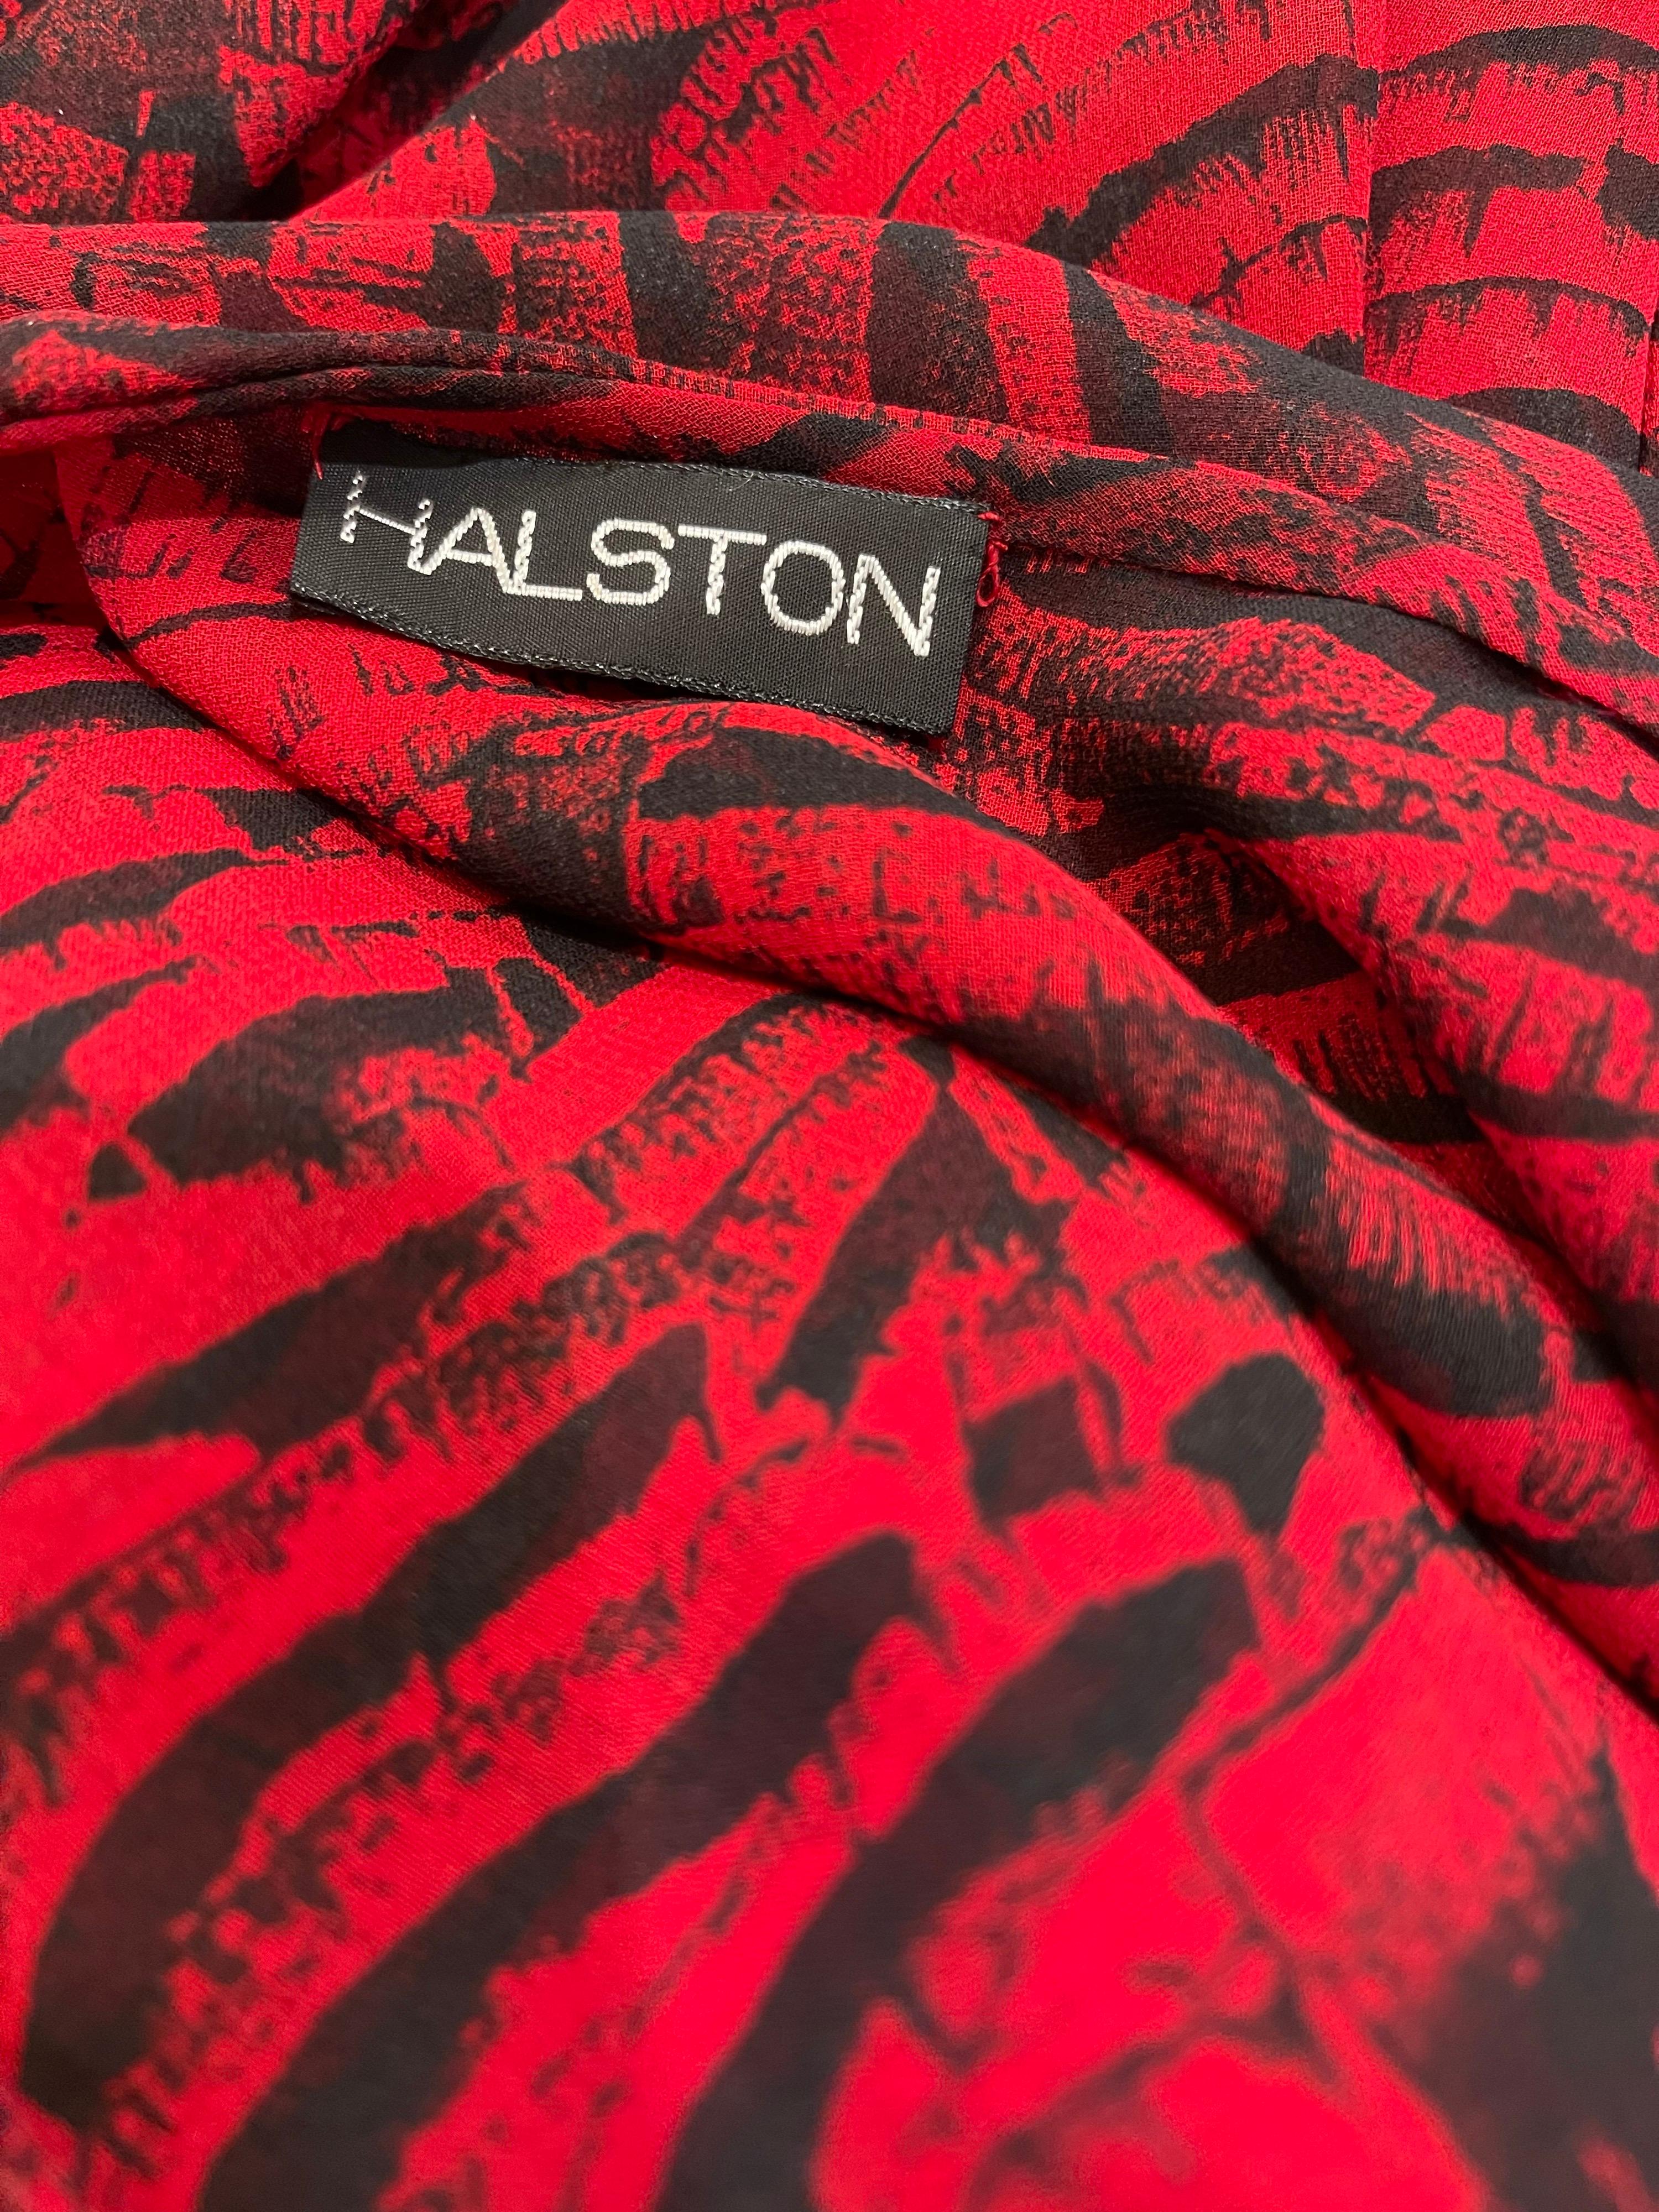 Fabuleuse robe trois pièces vintage des années 70 de Halston Couture en mousseline de soie rouge et noire à imprimé animalier abstrait ! Cette robe comporte deux couches de mousseline de soie semi transparente et des bretelles en soie nude. La robe